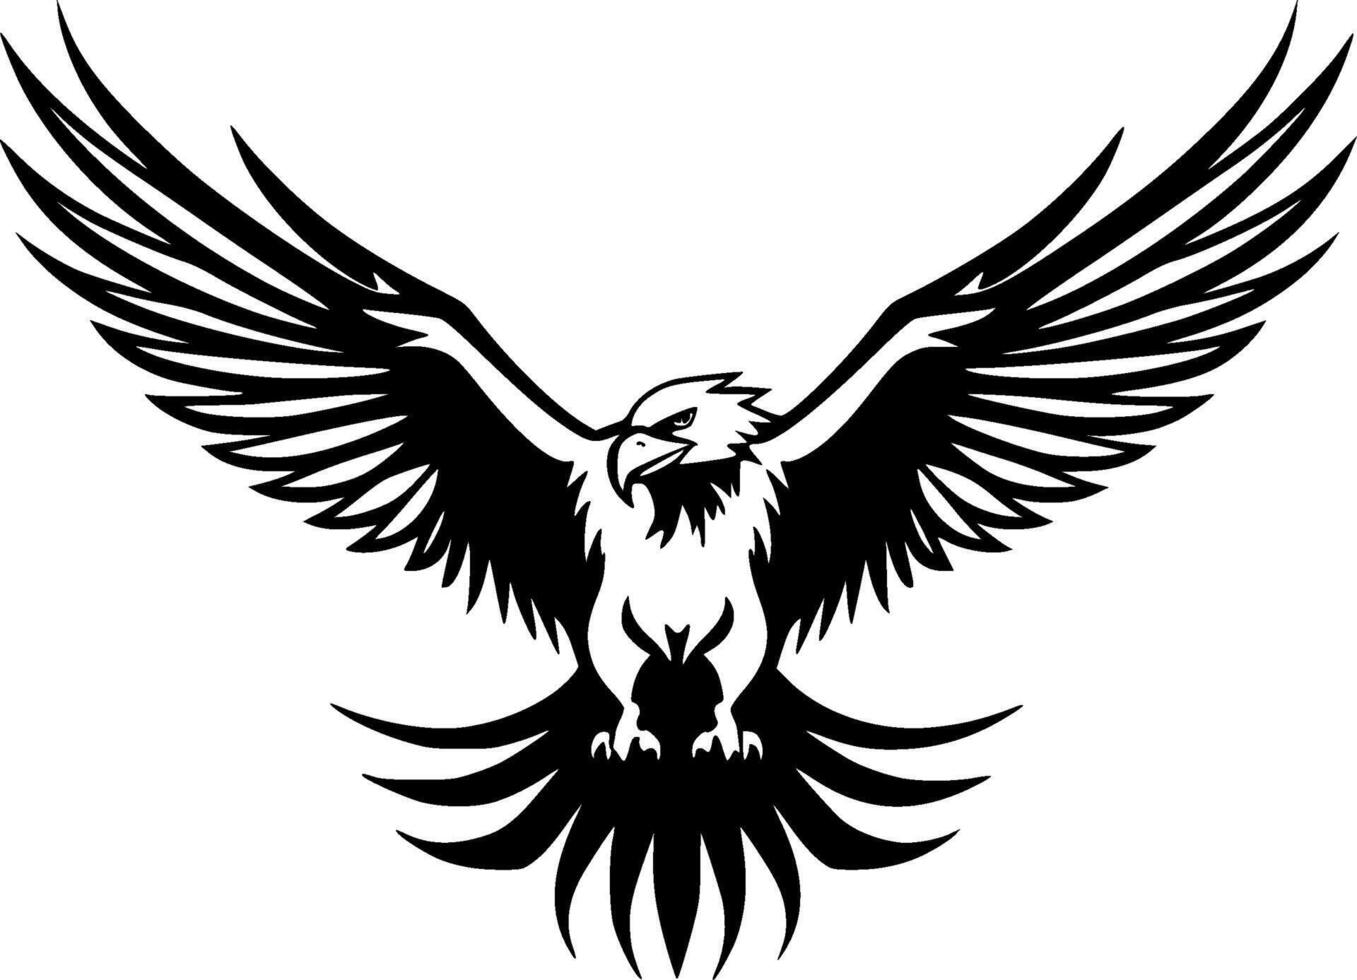 águila, minimalista y sencillo silueta - vector ilustración